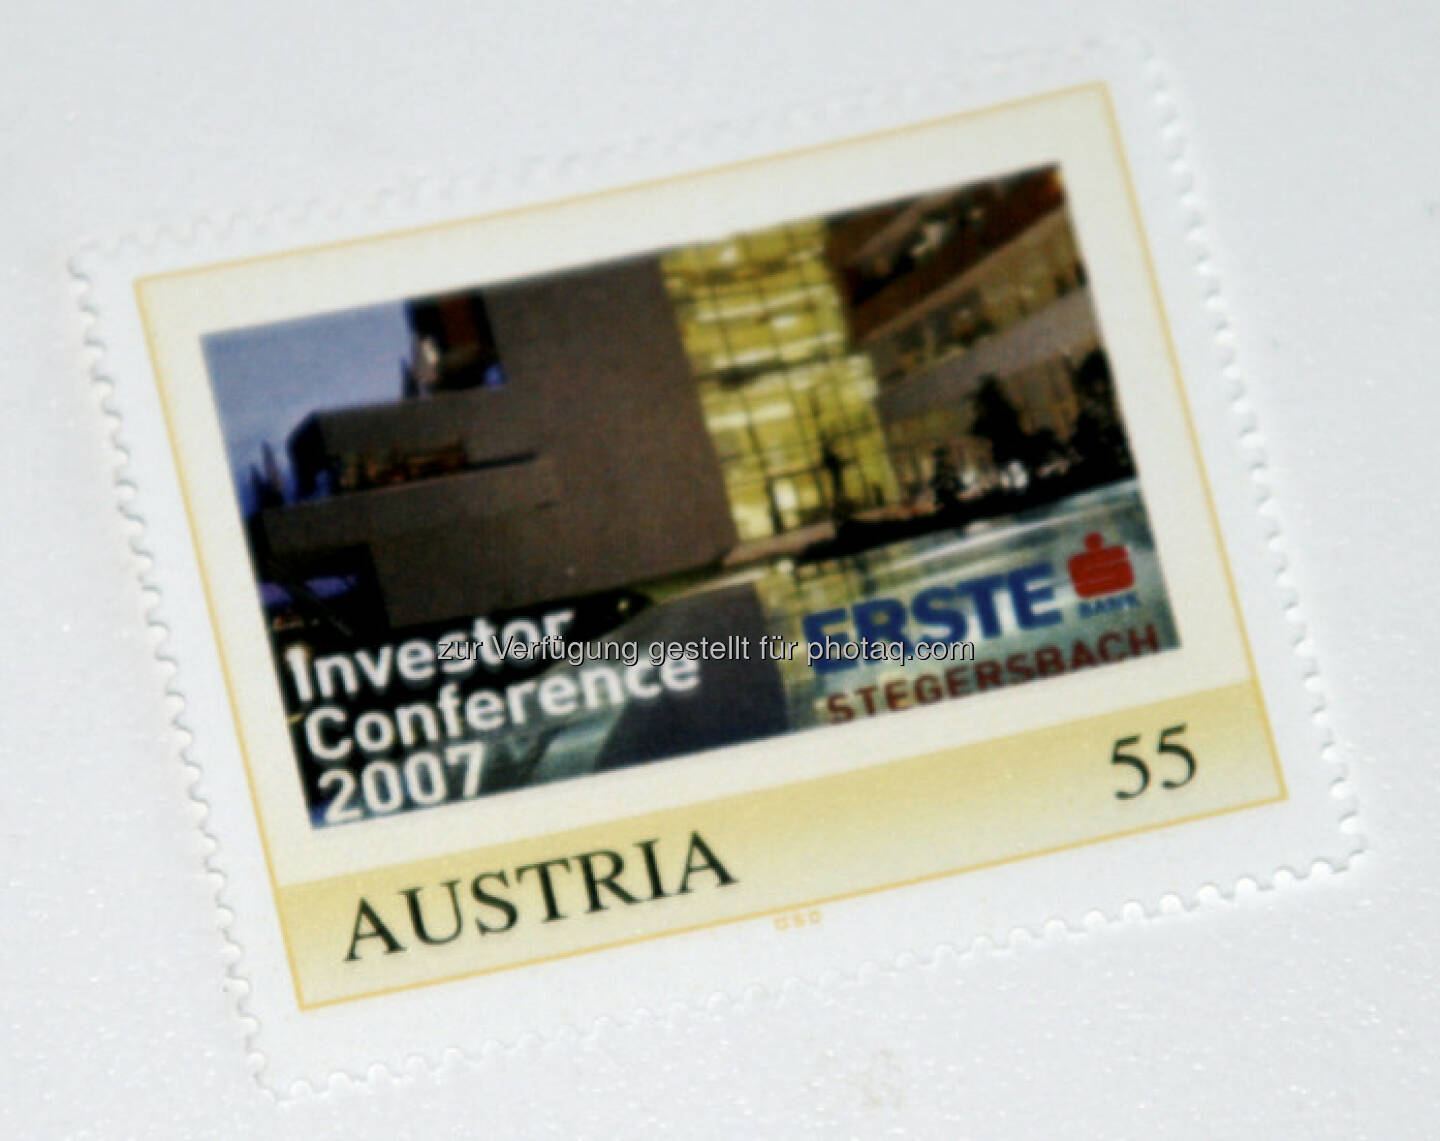 Erste Group: Die Marke zur Investor Conference in Stegersbach